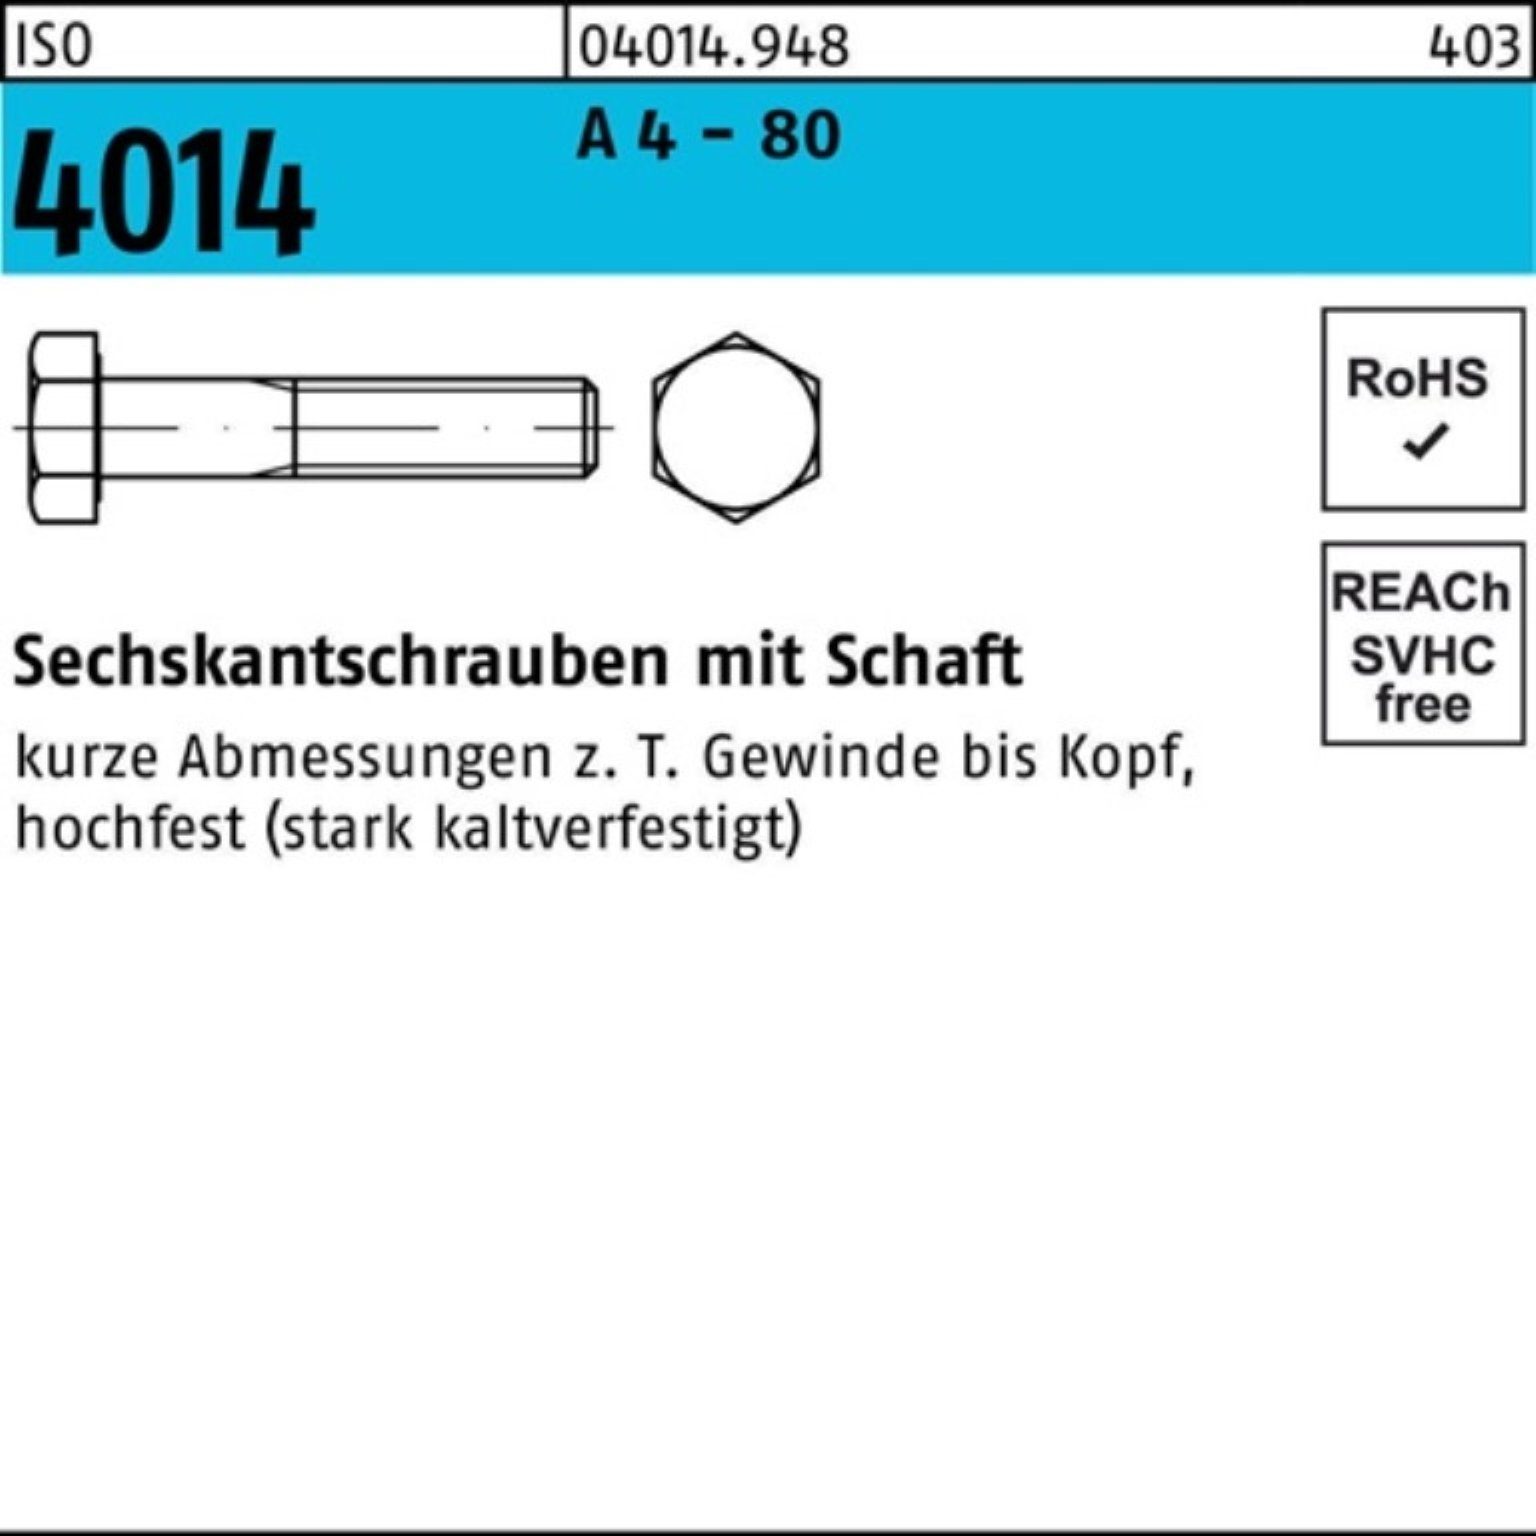 Bufab Sechskantschraube 100er Pack Sechskantschraube ISO 4014 Schaft M6x 30 A 4 - 80 100 Stüc